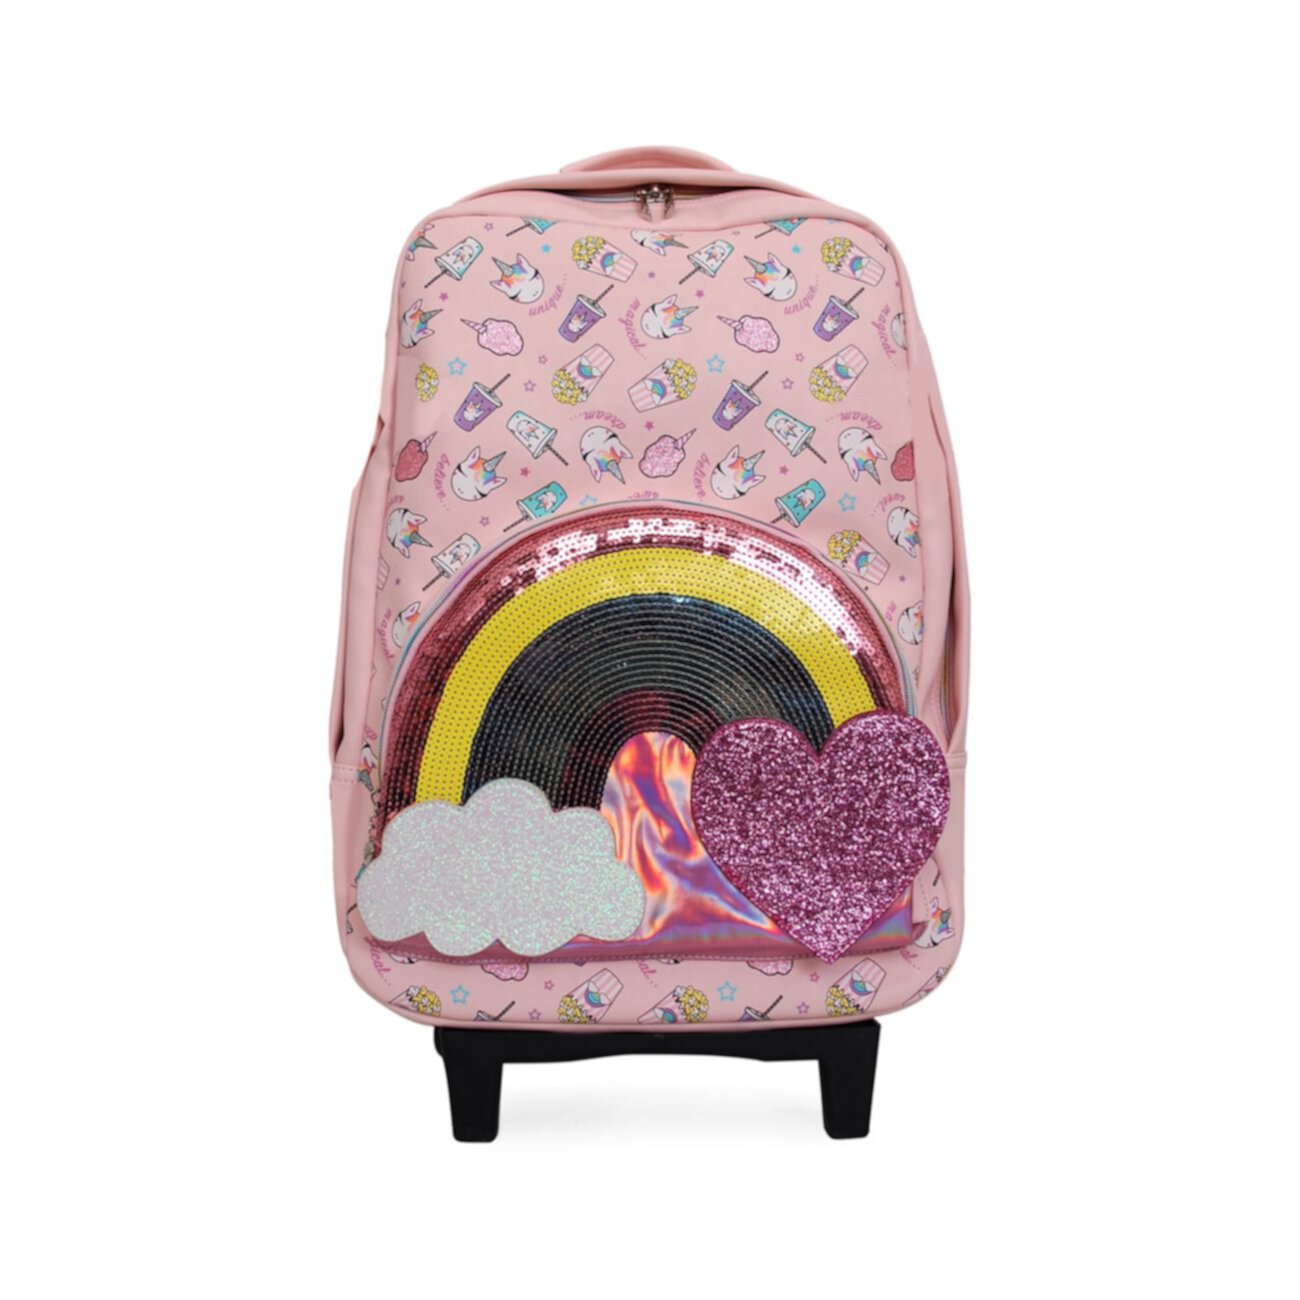 Детский чемодан с украшениями OMG! Accessories